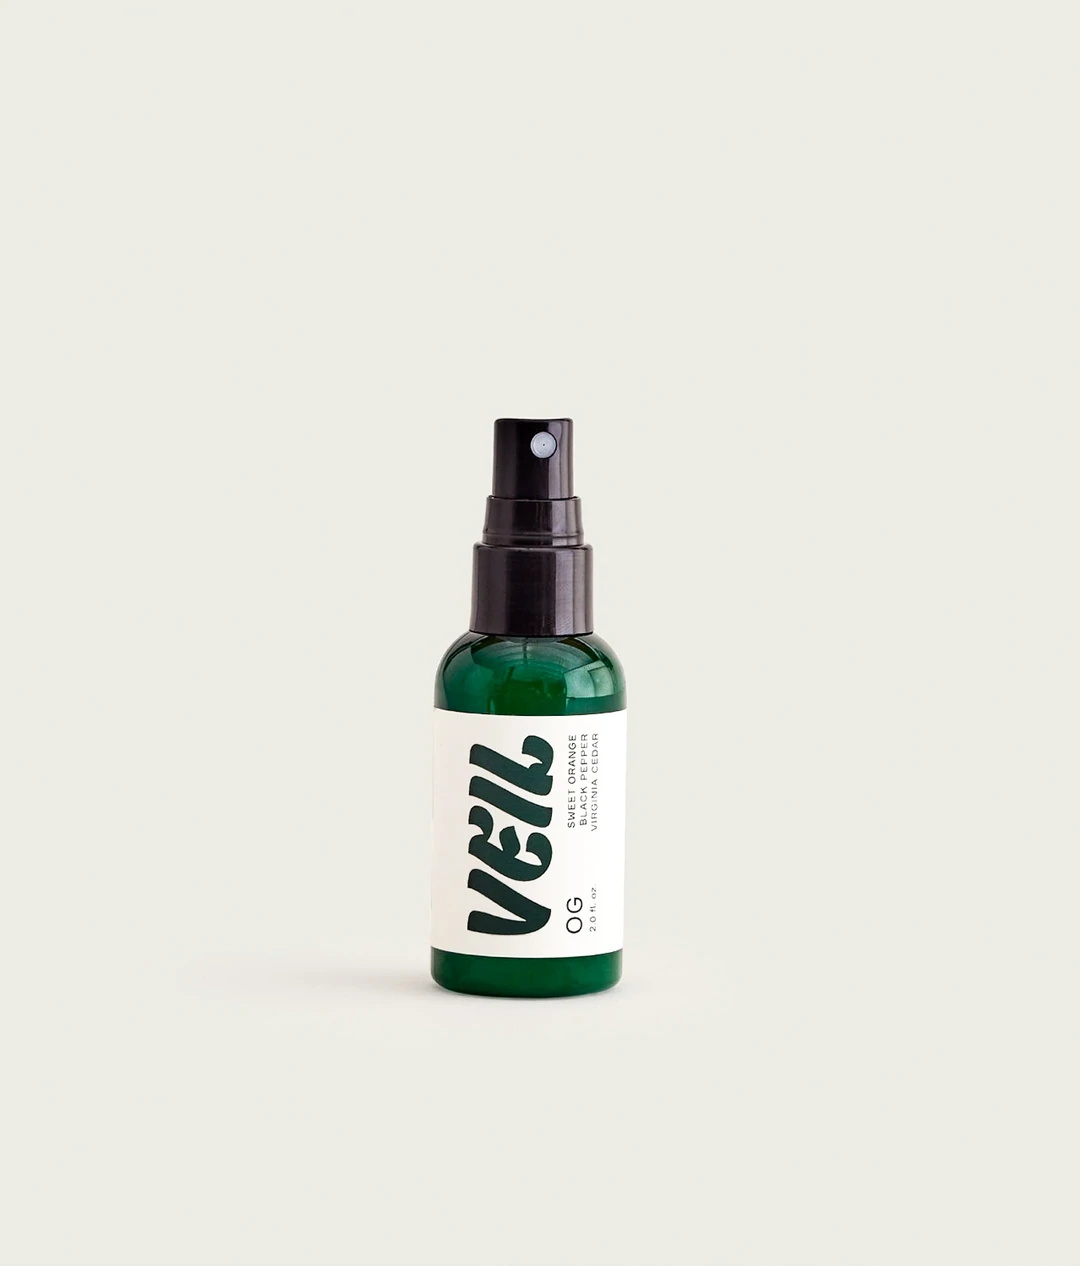 OG cannabis odor eliminator spray (2 oz)